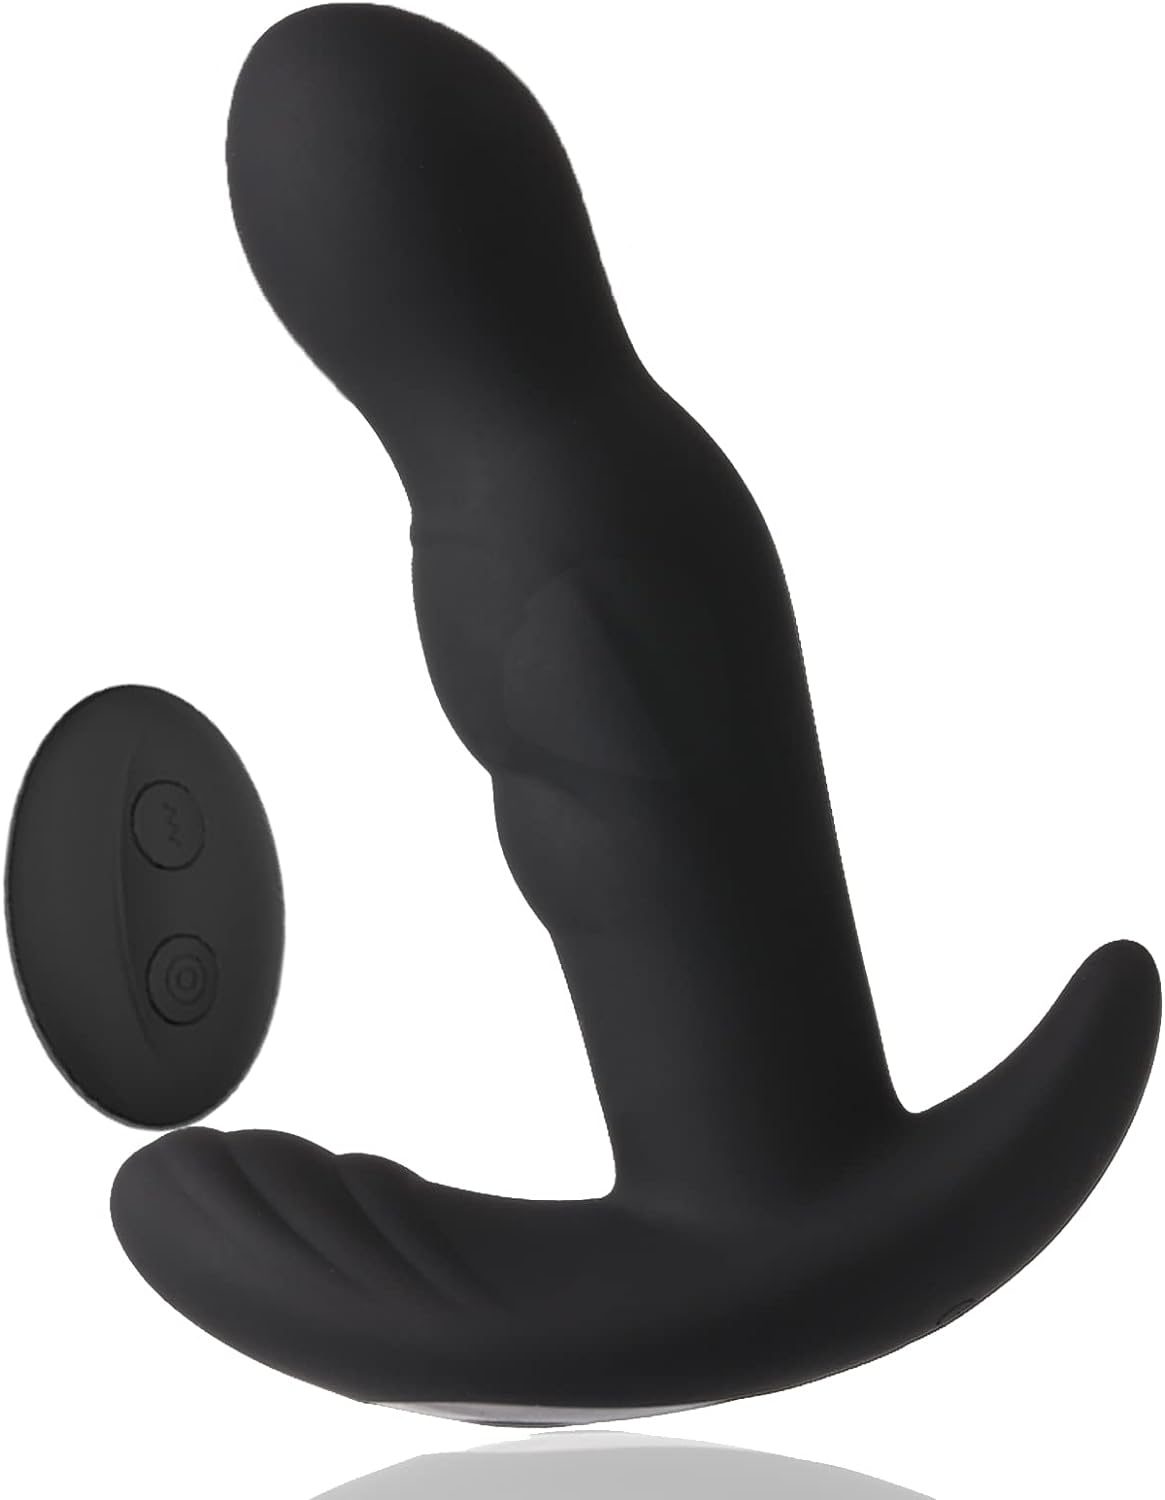 Estimulador de prostata en color negro, juguete sexual